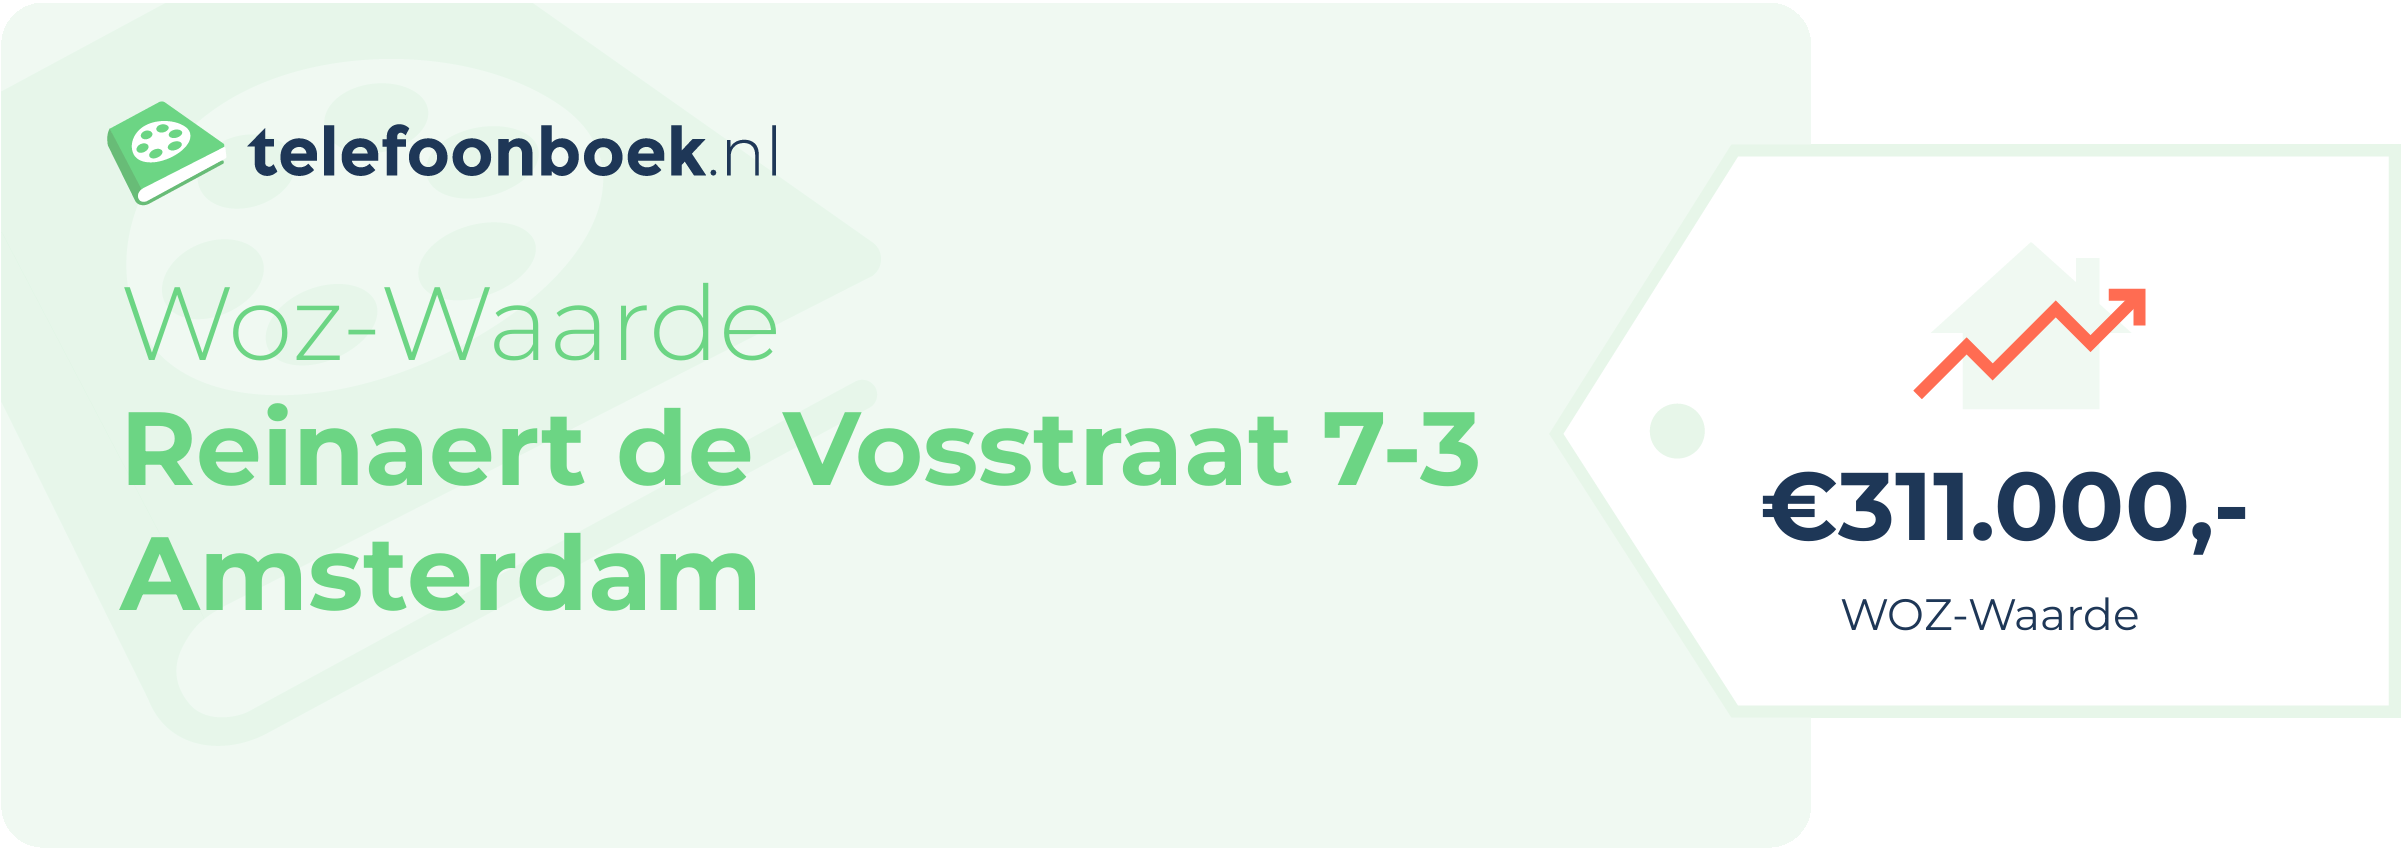 WOZ-waarde Reinaert De Vosstraat 7-3 Amsterdam